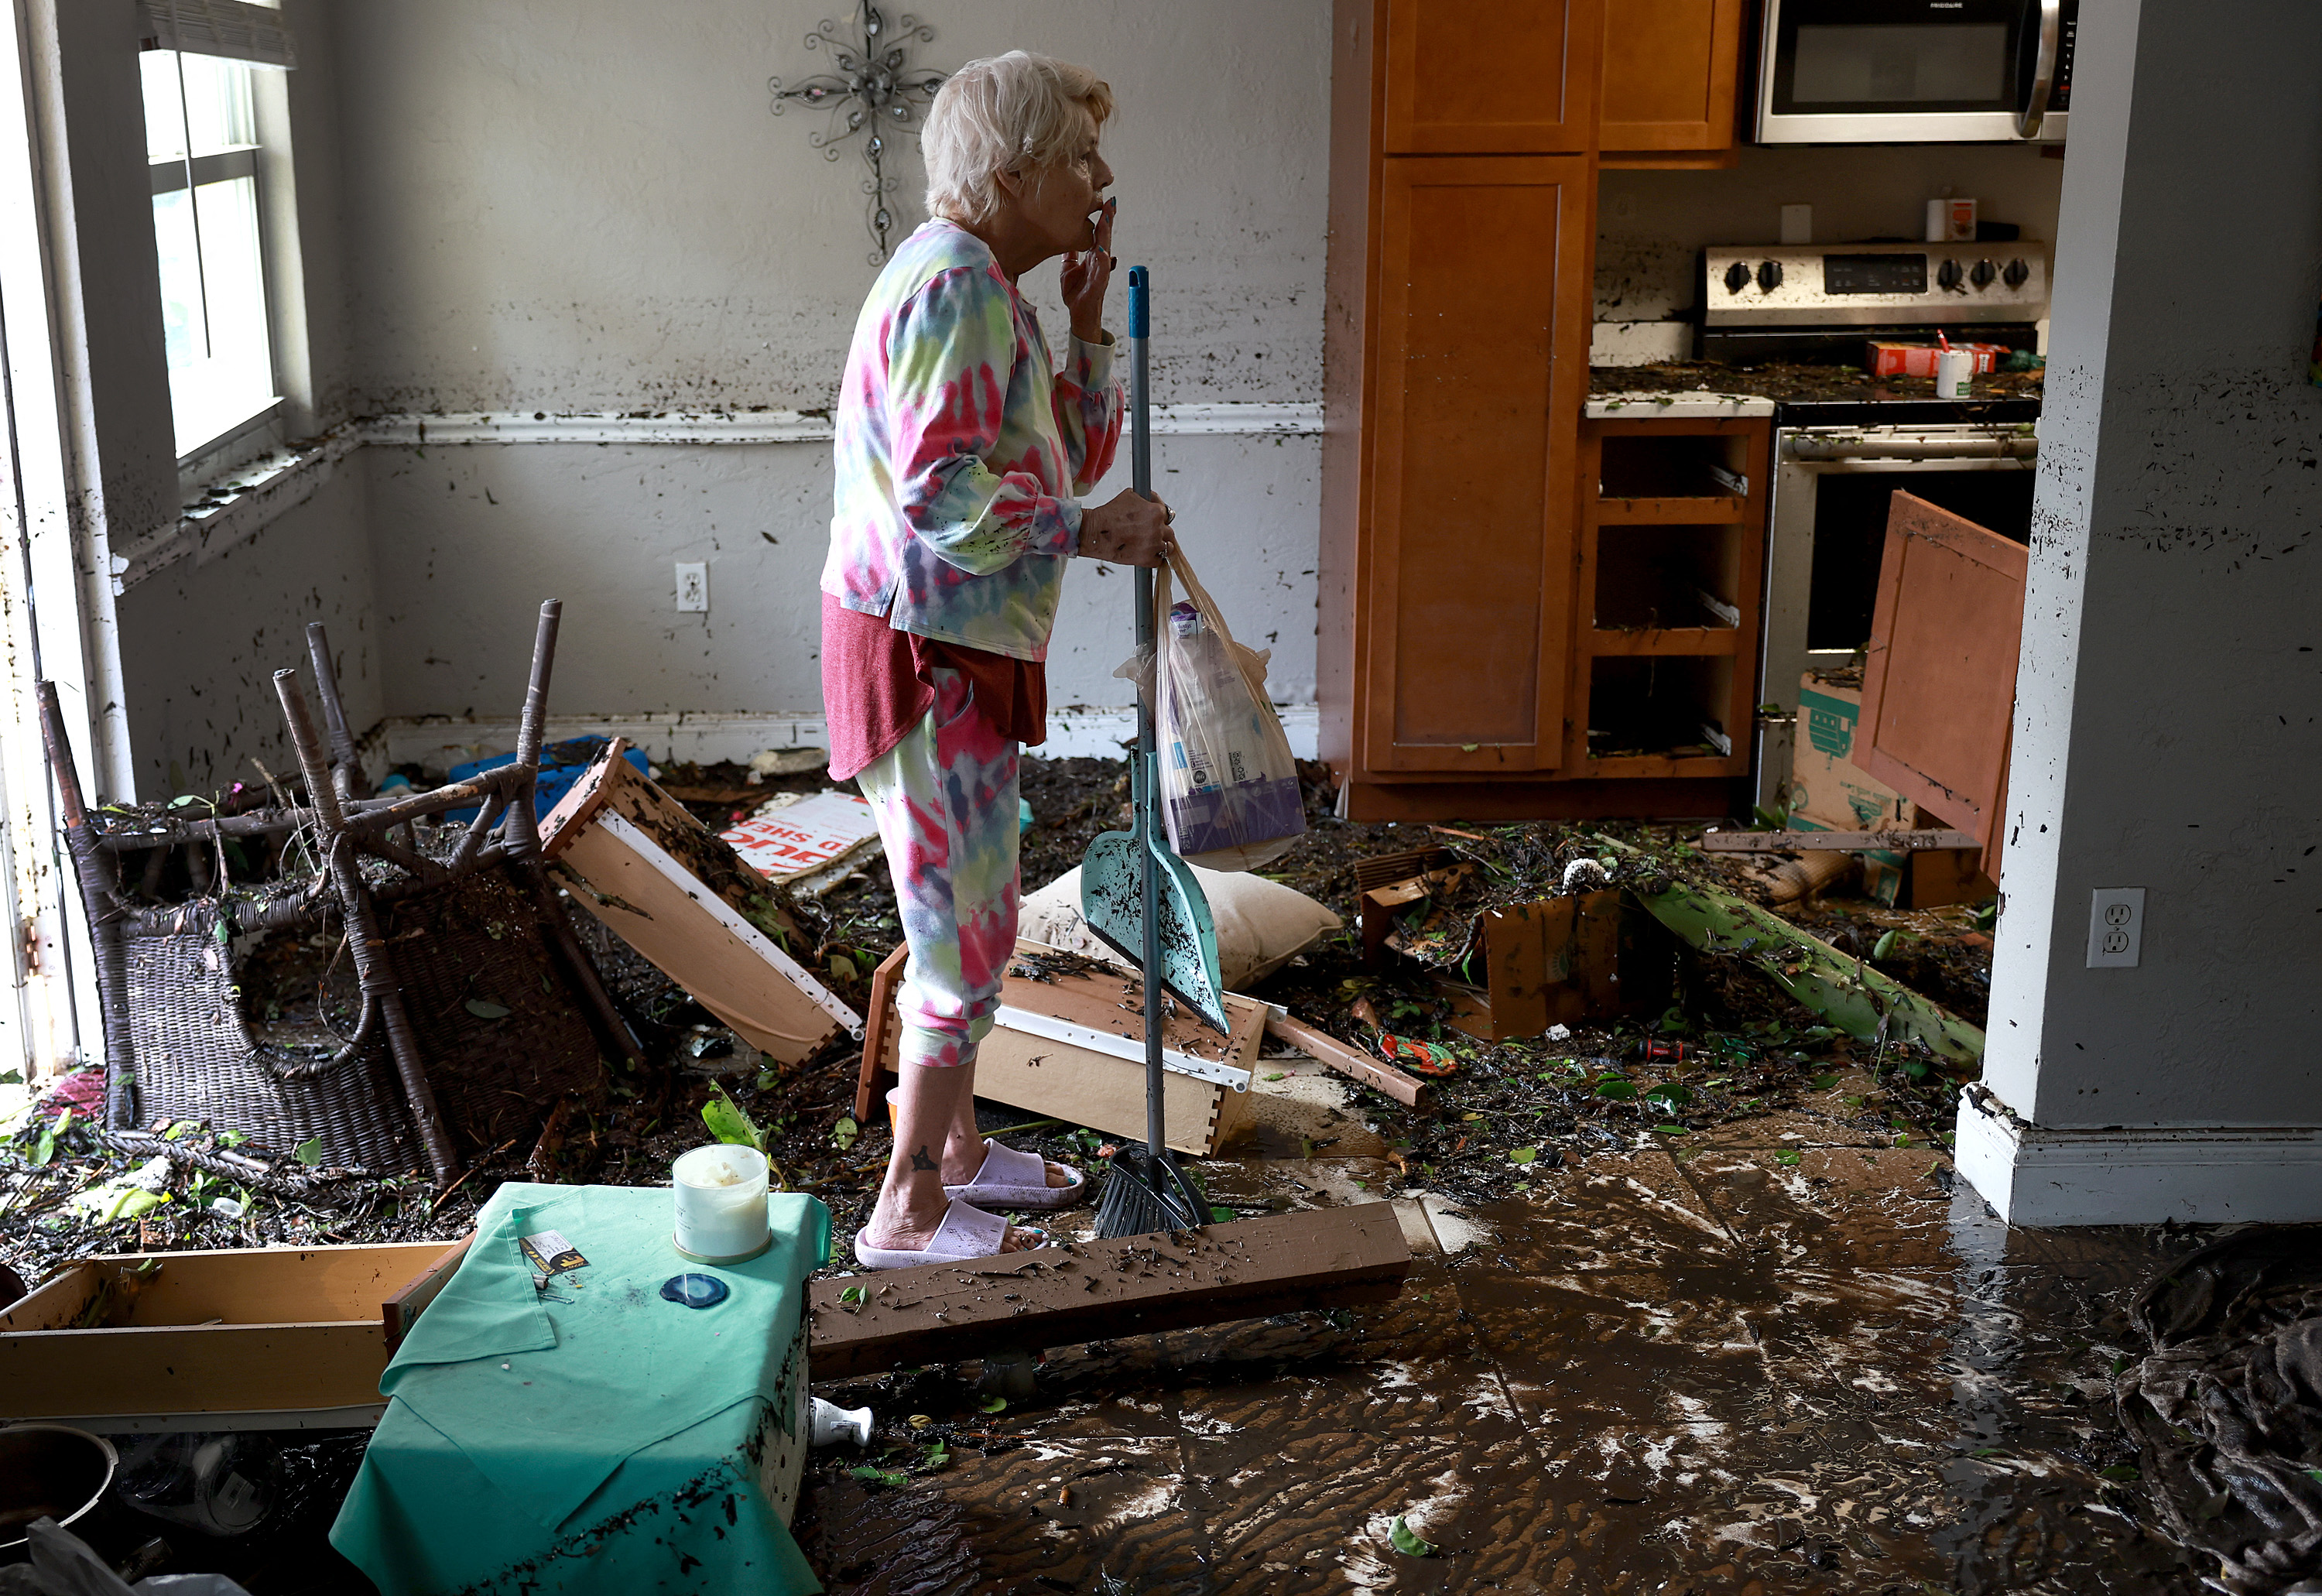 Stedi Scuderi mira su apartamento después de que el agua lo inundar, cuando el huracán Ian pasó por el área de Fort Myers, el 29 de septiembre de 2022. El huracán trajo fuertes vientos, marejadas ciclónicas y lluvias al área, causando daños severos. (JOE RAEDLE / GETTY IMAGES NORTH AMERICA / Getty Images via AFP)